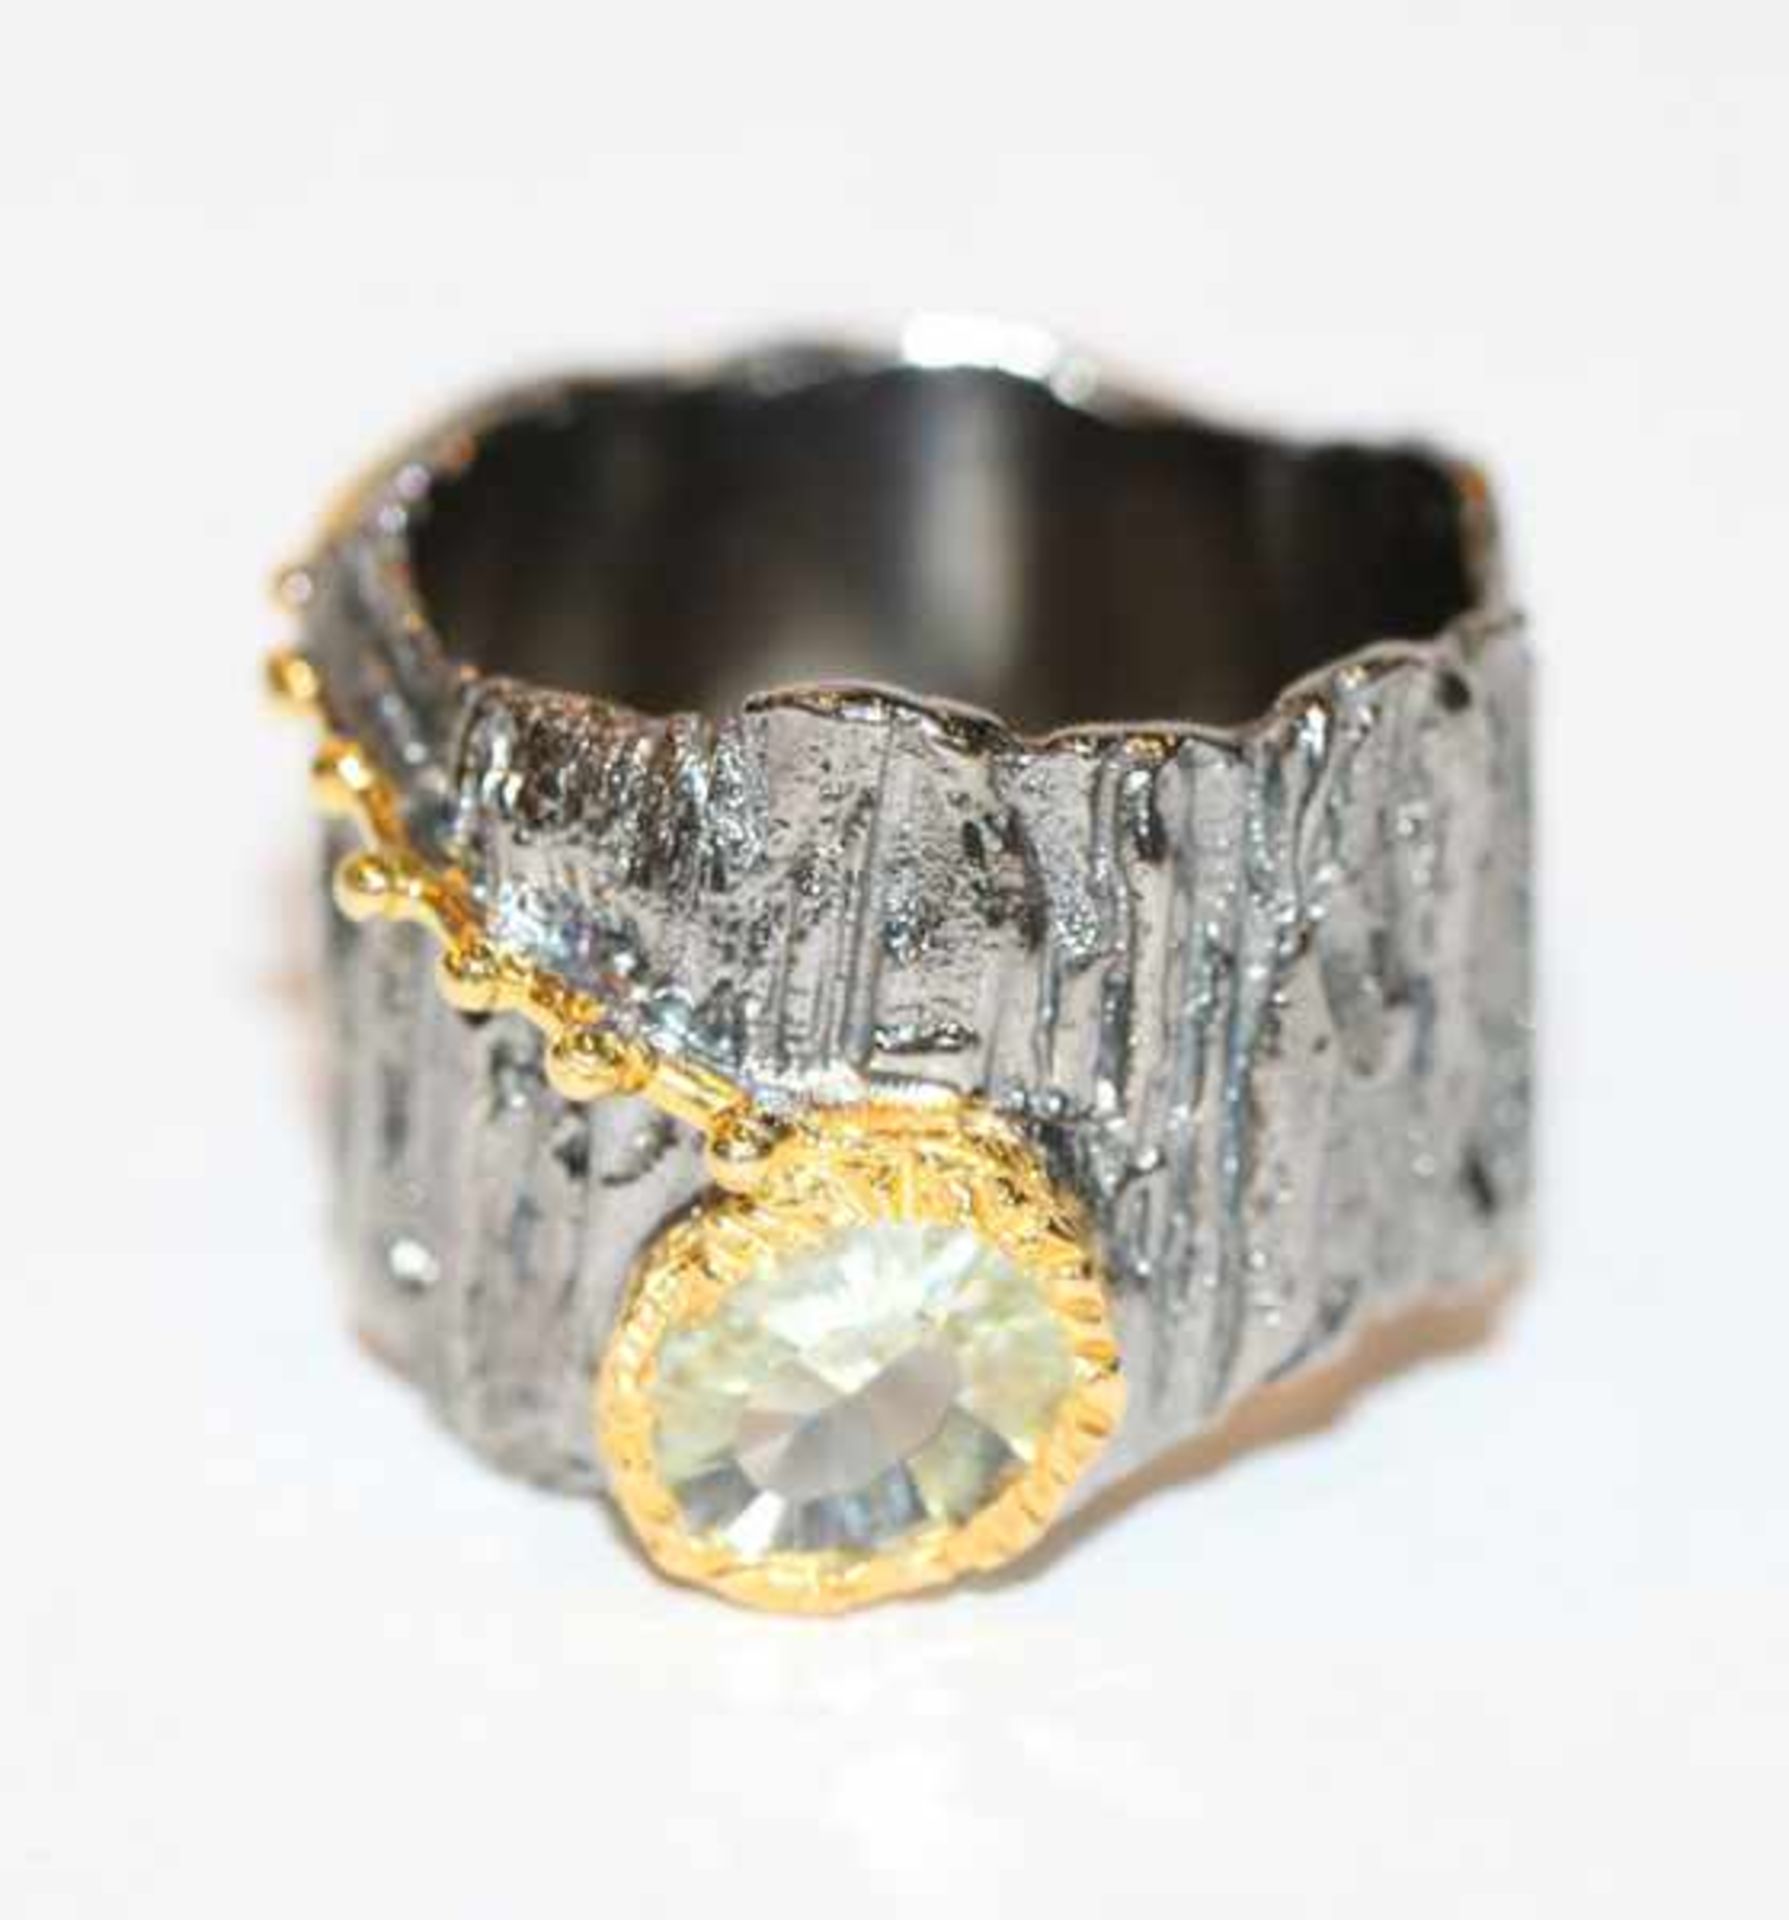 Silber Designer Ring in Baumrinden-Optik, teils vergoldet mit Lemonenquarz, Gr. 58, ausgefallene